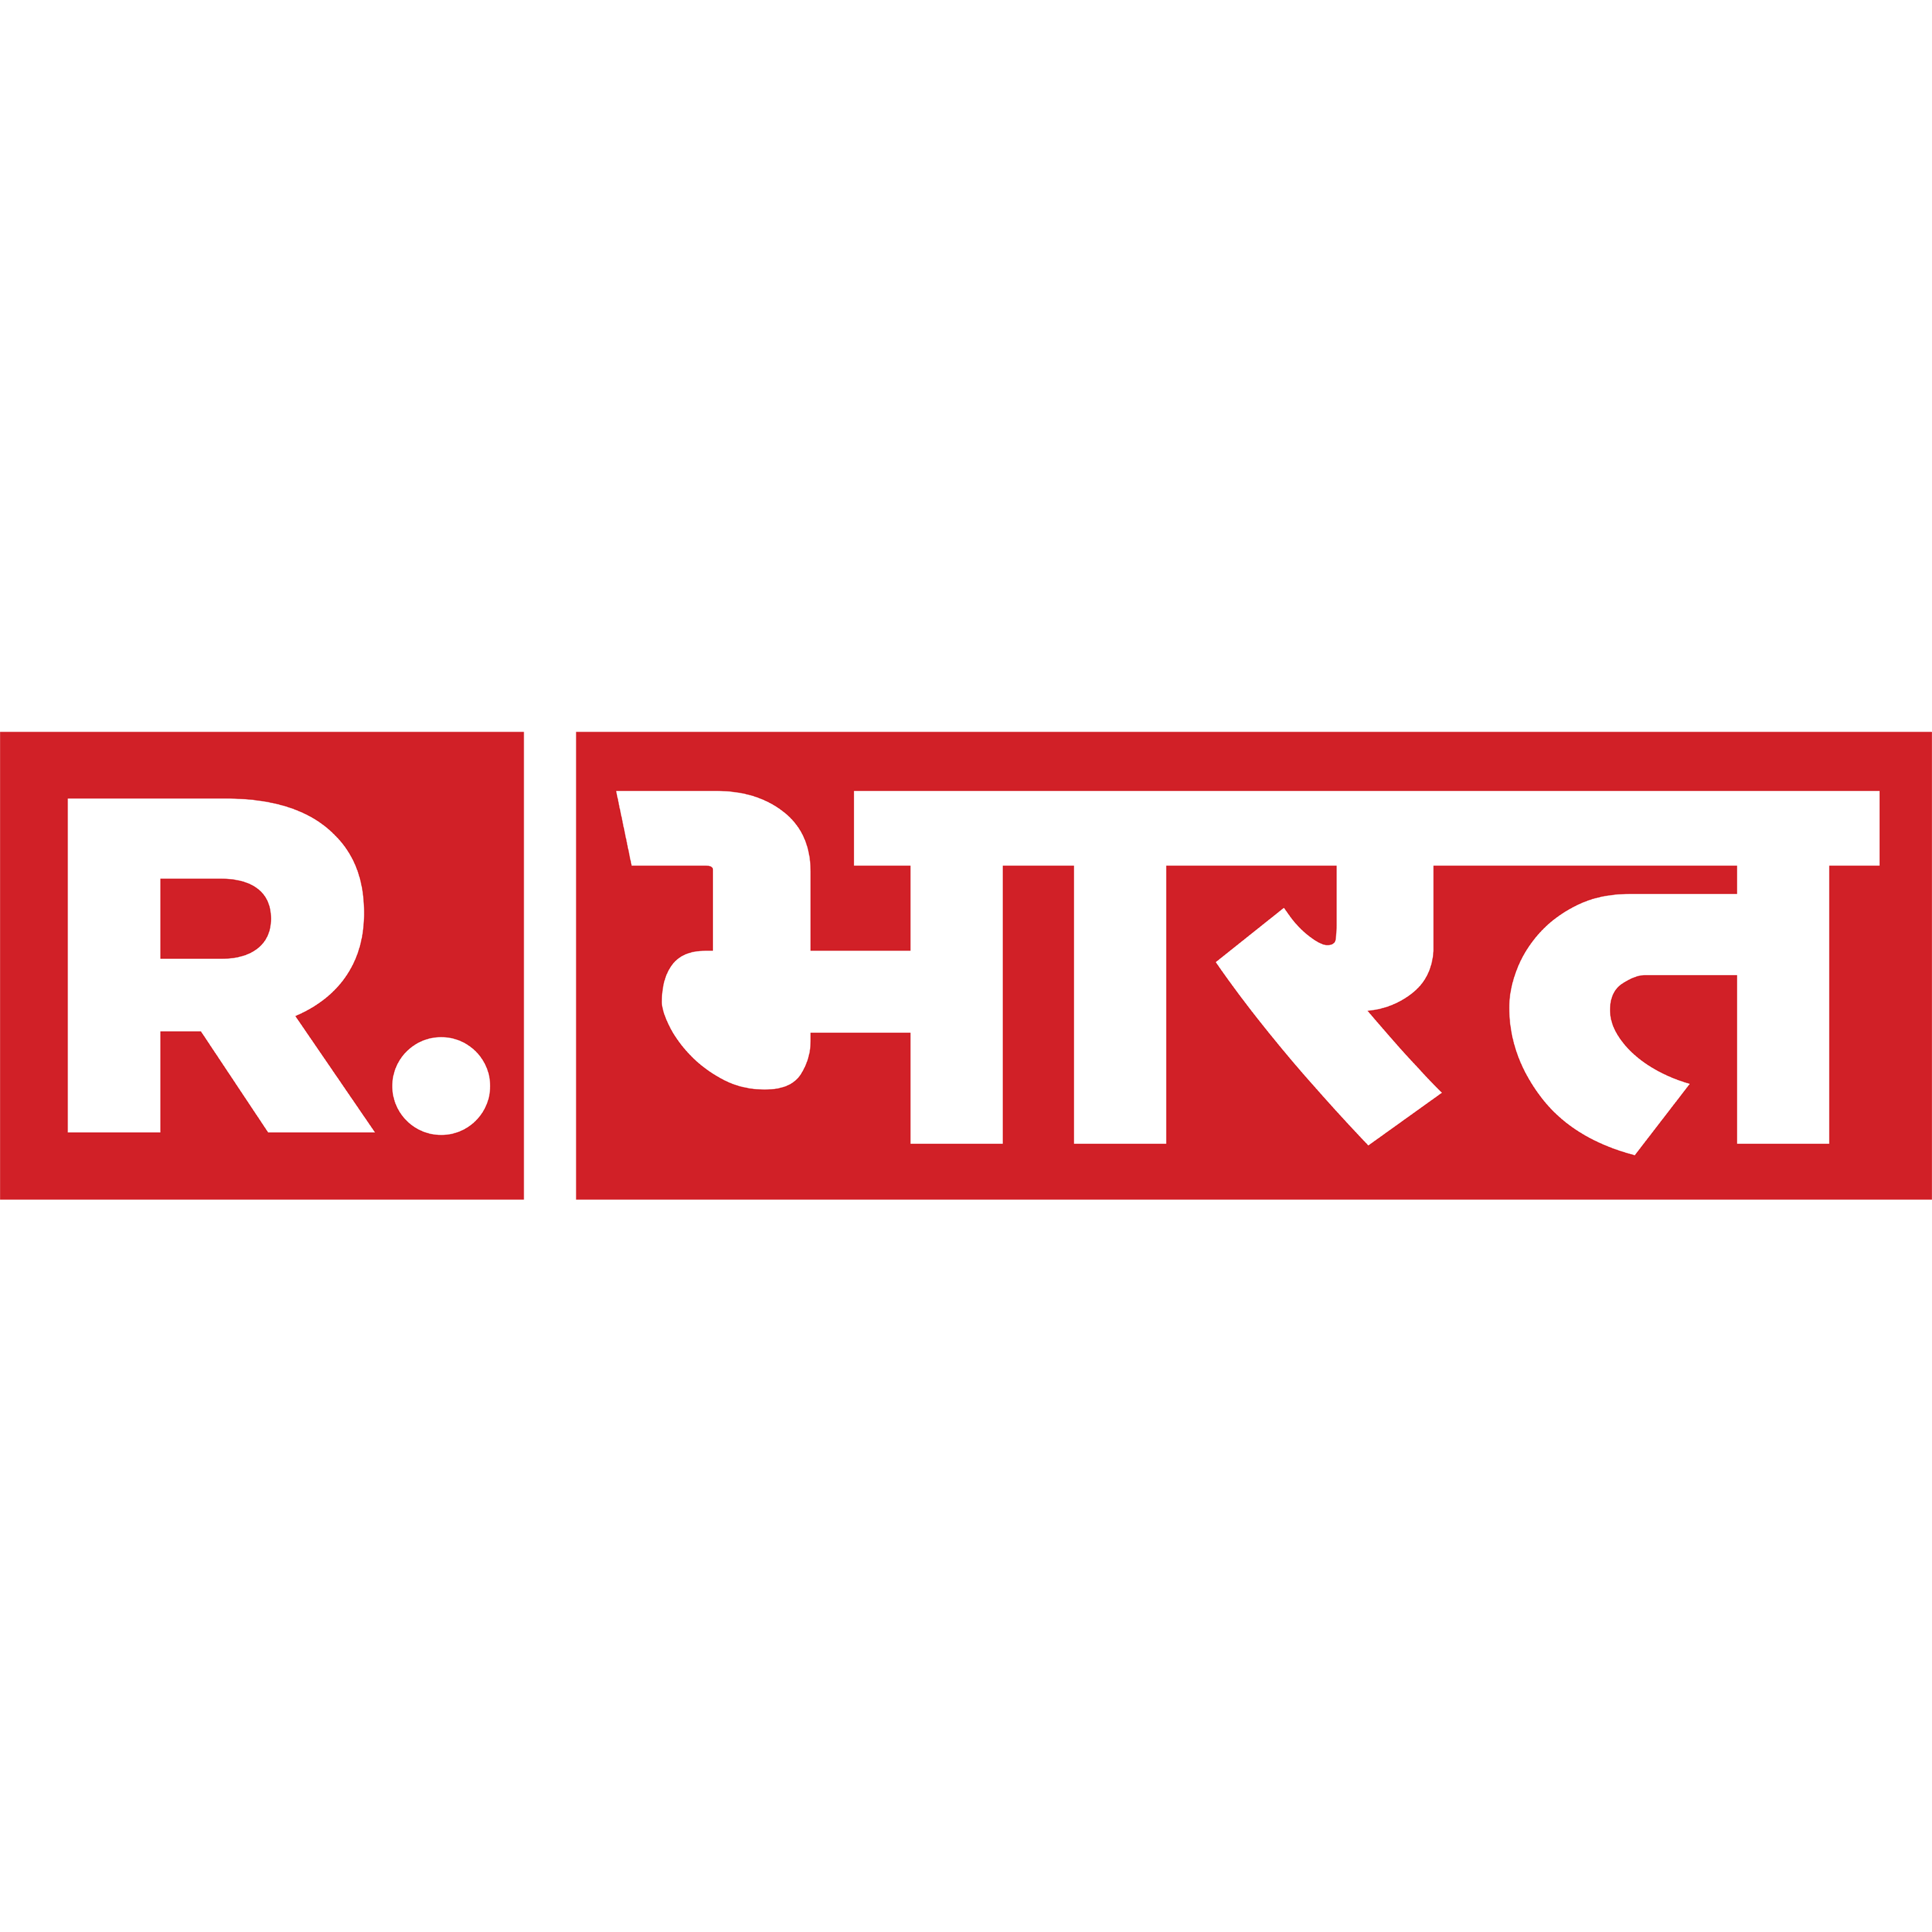 Republic Bharat Logo Transparent Image